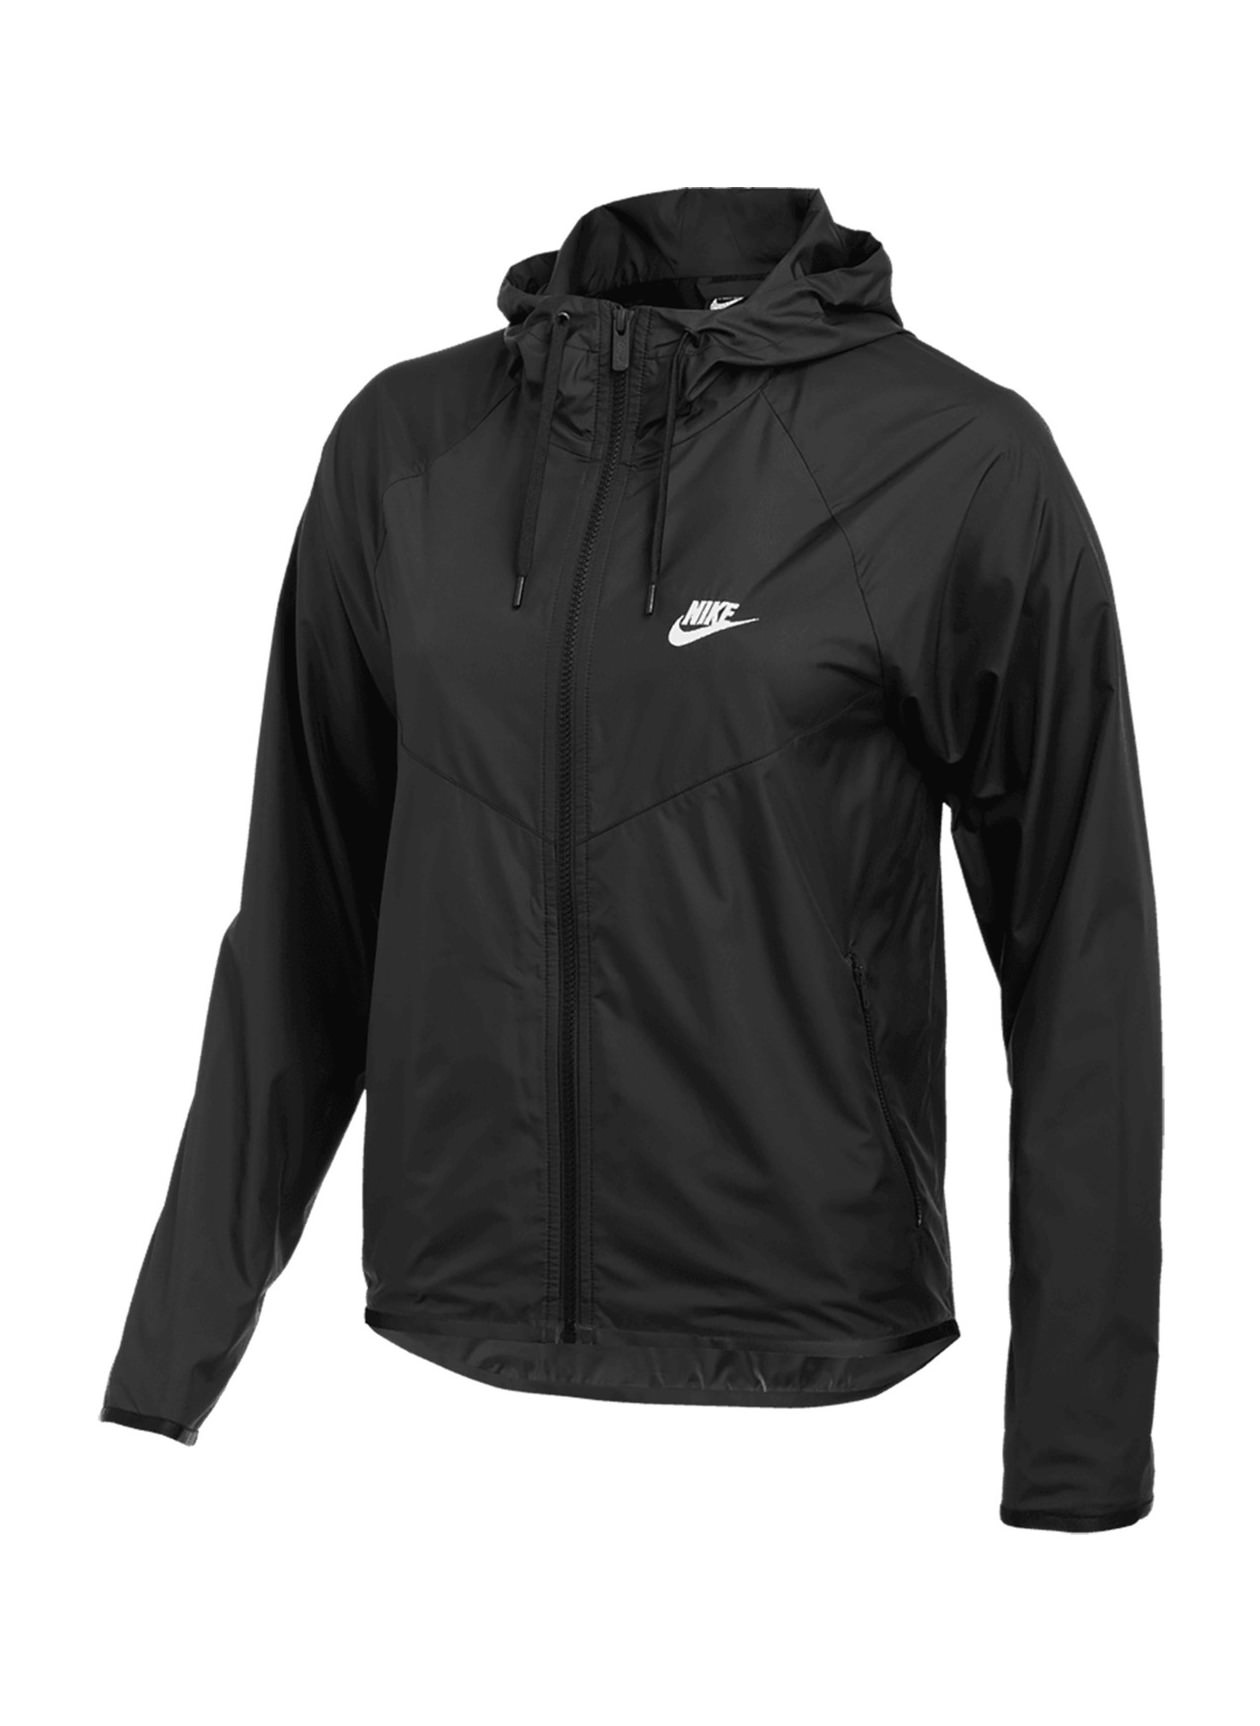 Custom Jackets | Corporate Nike Women's Team Black / White Windrunner ...